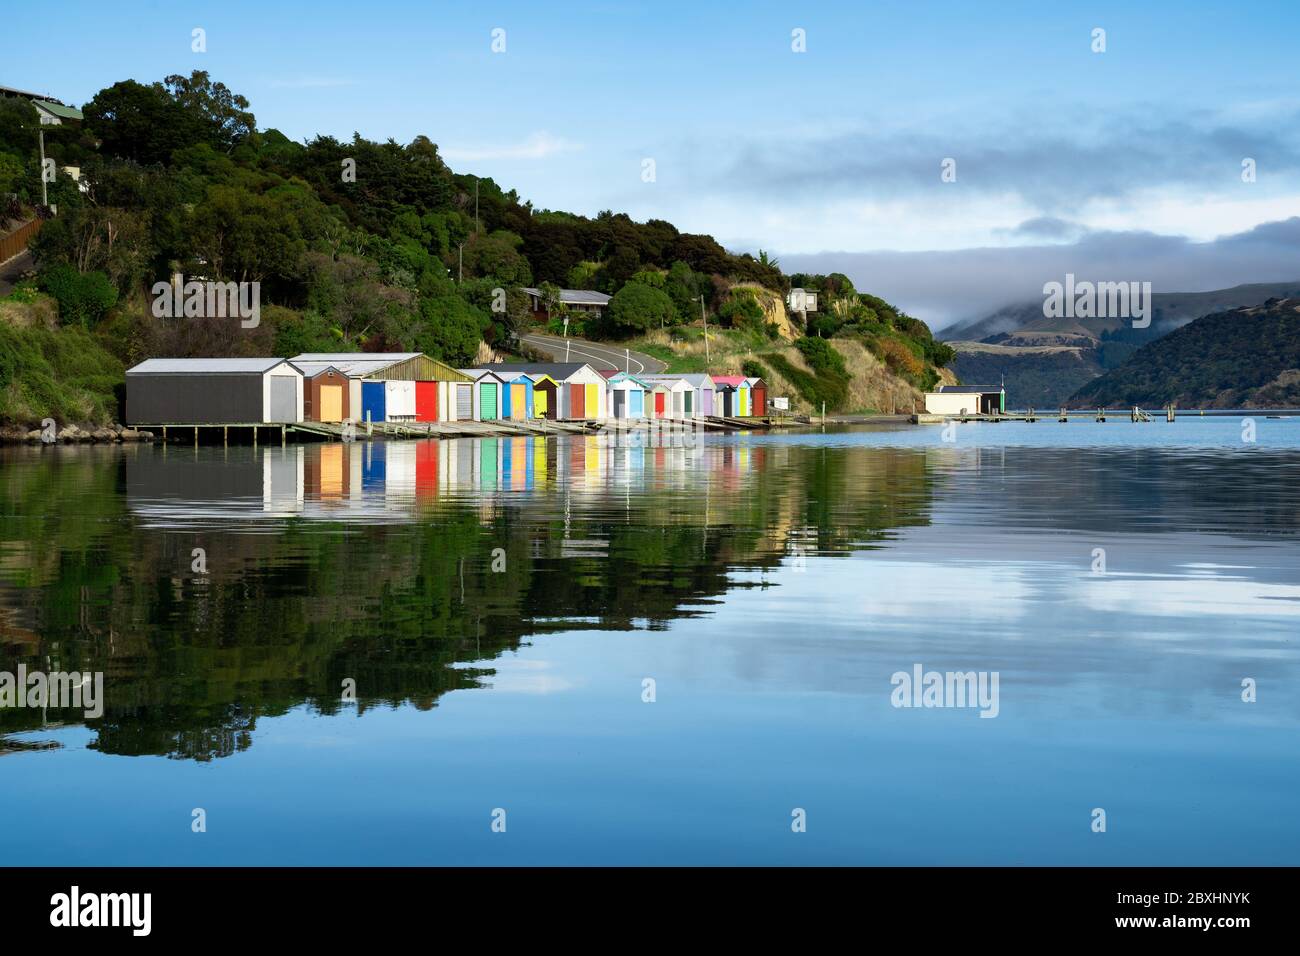 Bunte Bootsschuppen mit schönen Reflektionen am Tag in Duvauchelle, Akaroa Hafen auf Banks Peninsula in South Island, Neuseeland. Stockfoto